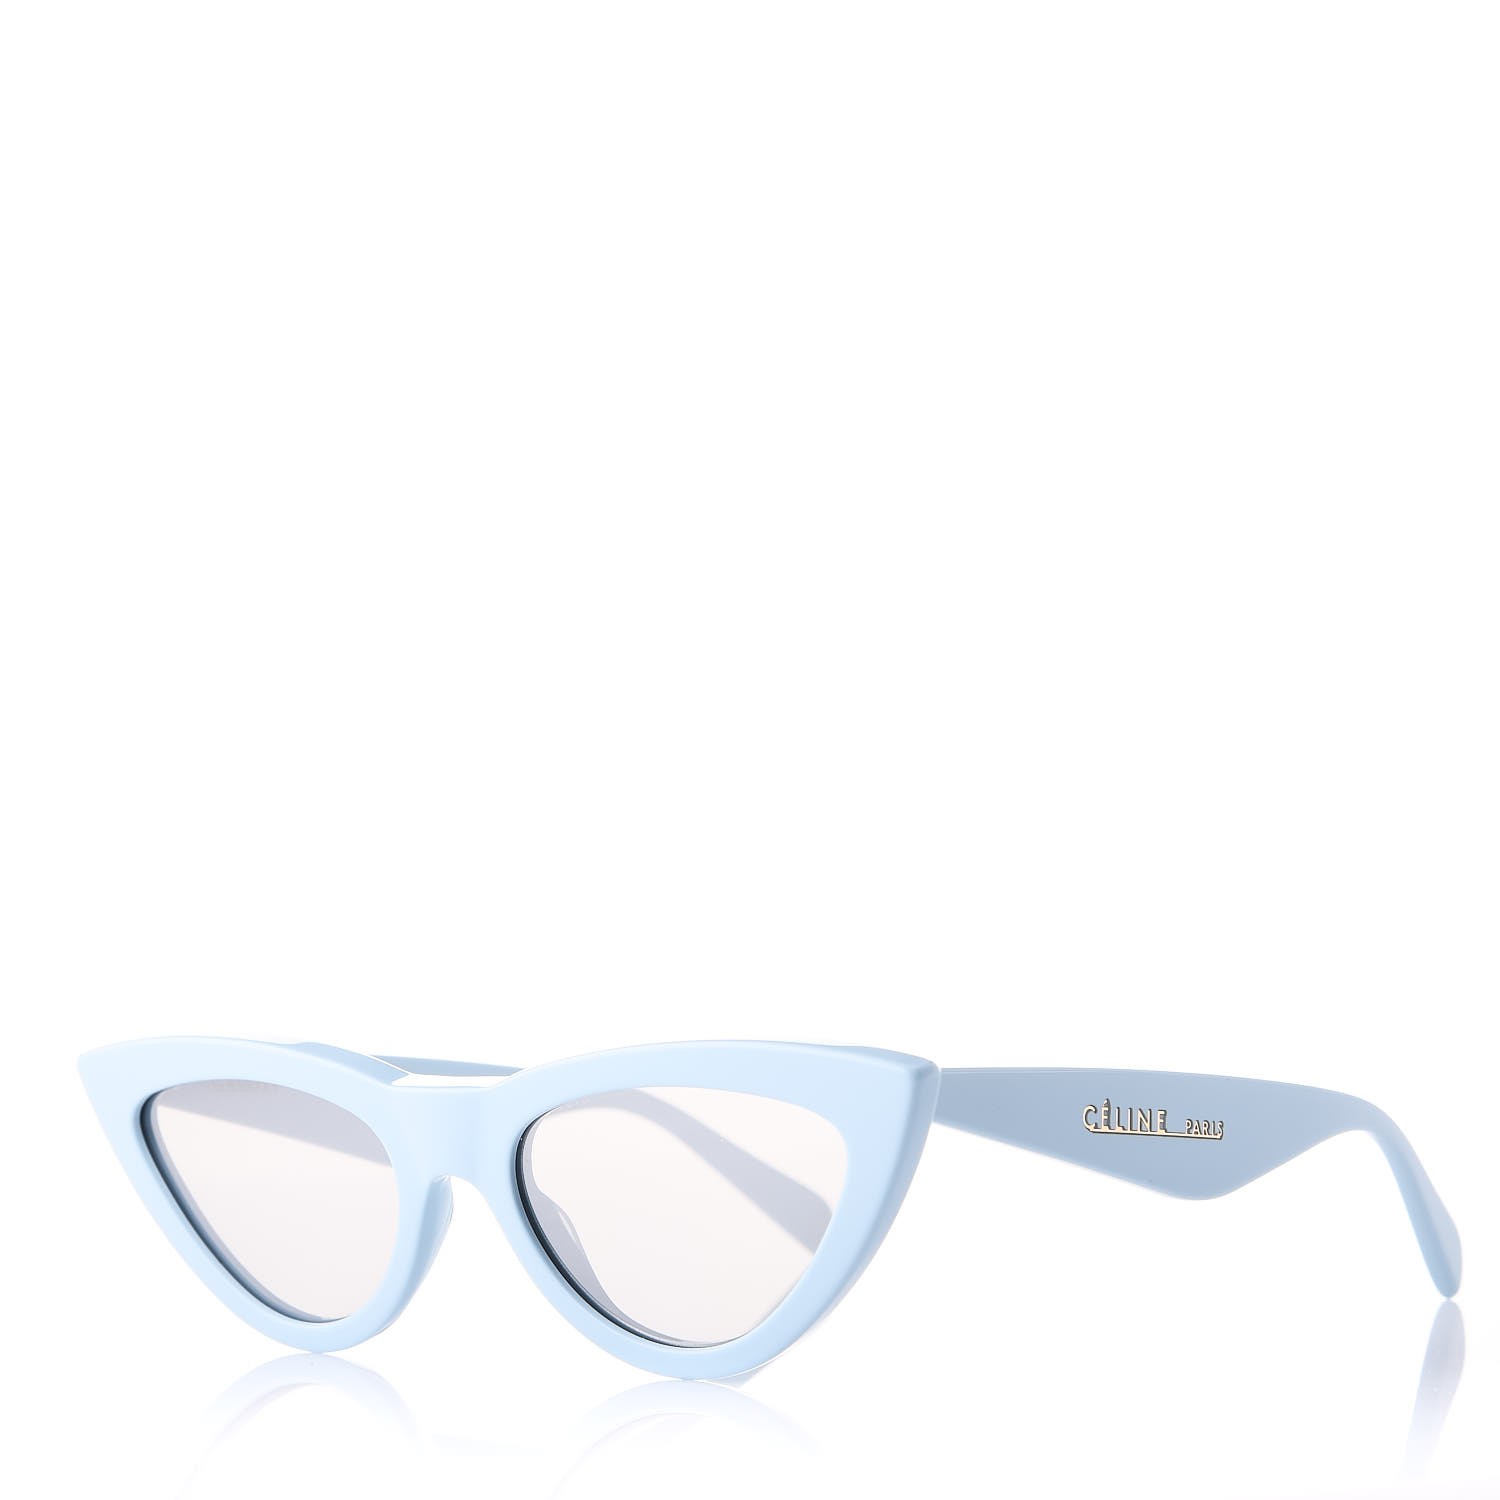 celine cat eye sunglasses blue